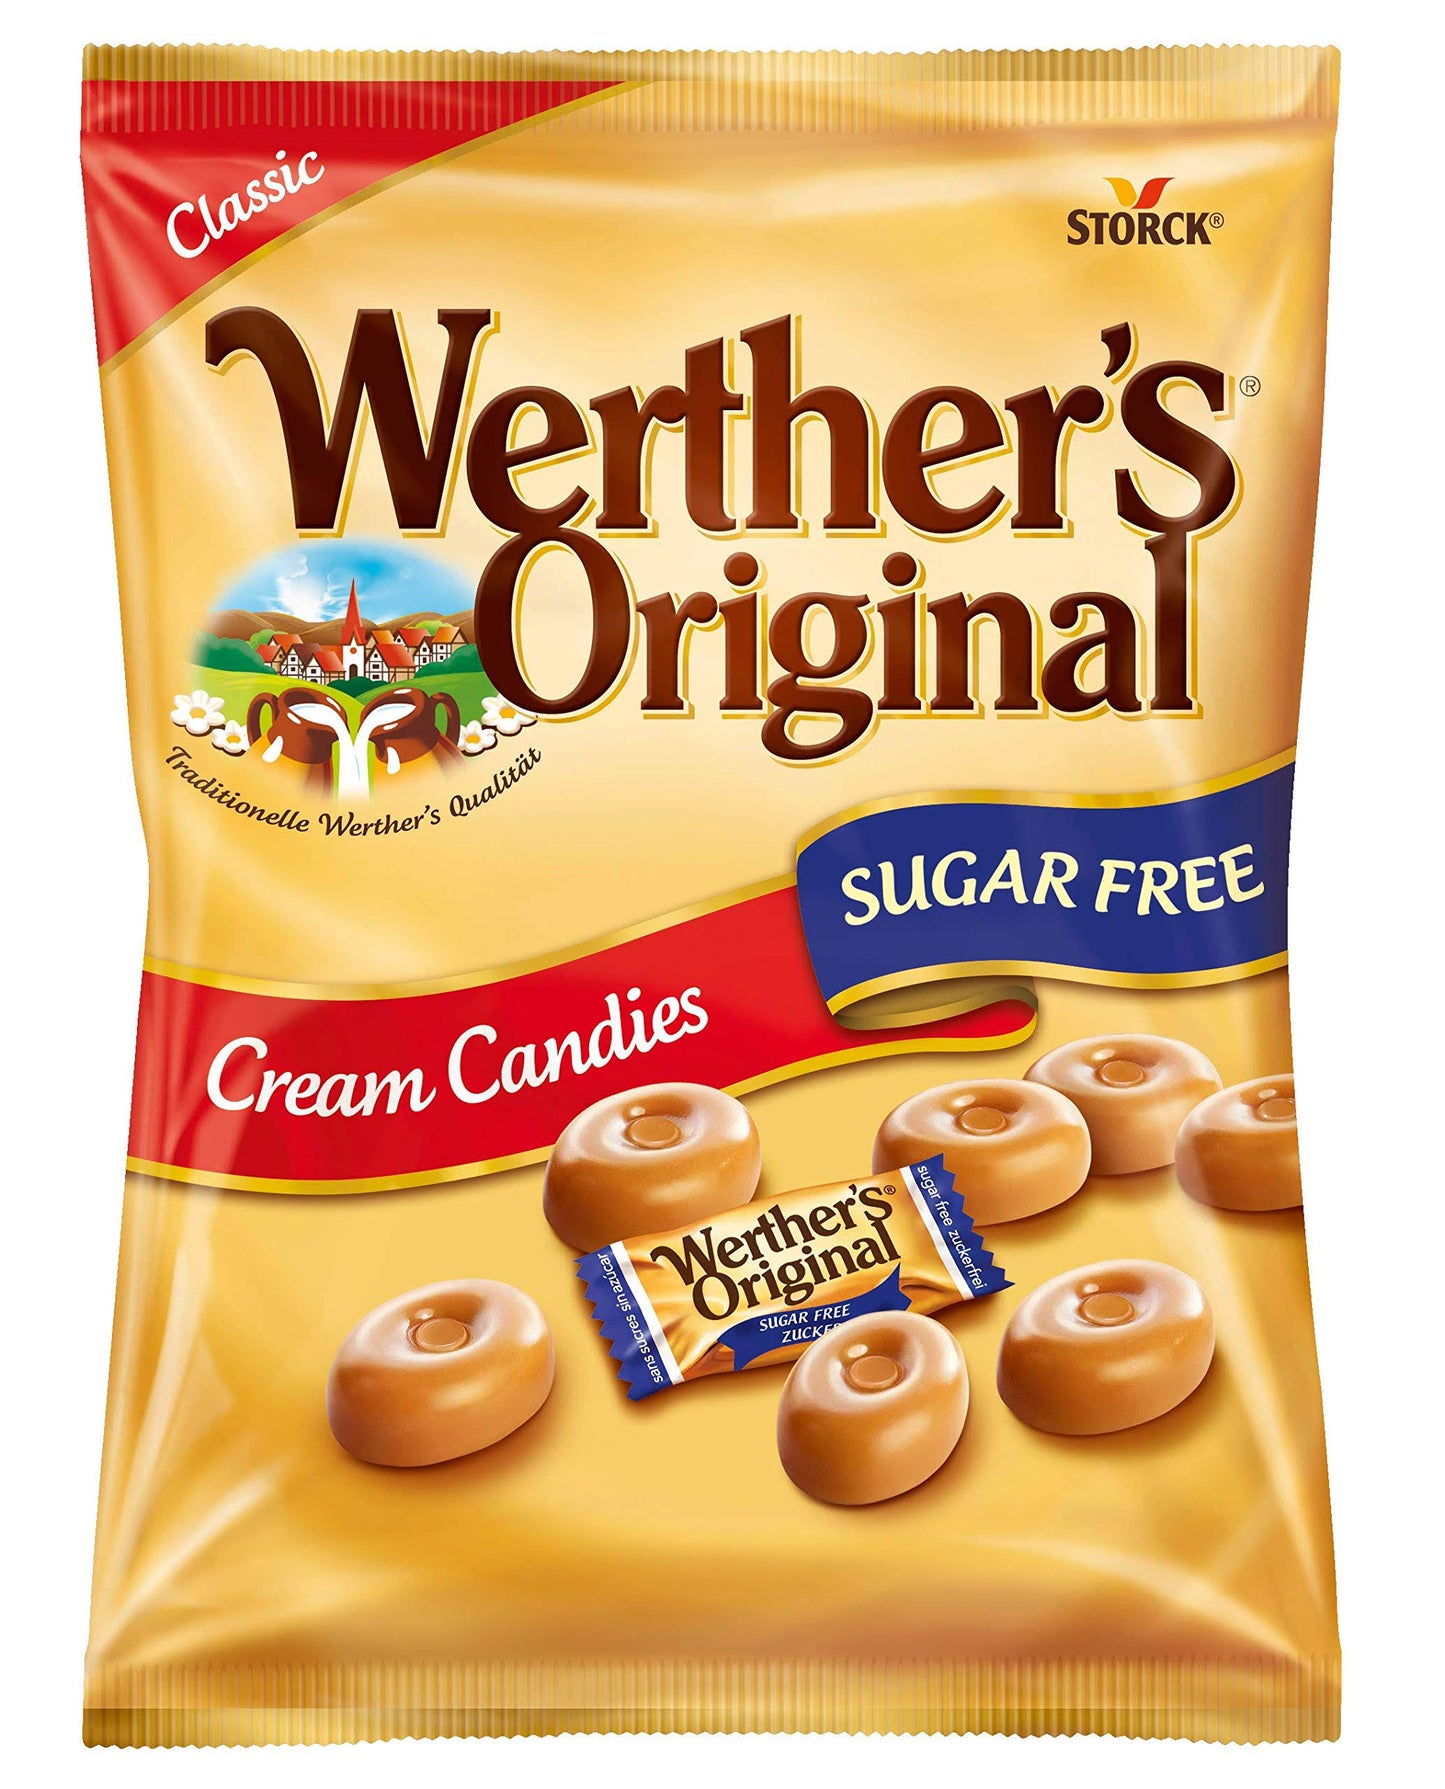 Sugar free Werther’s Original